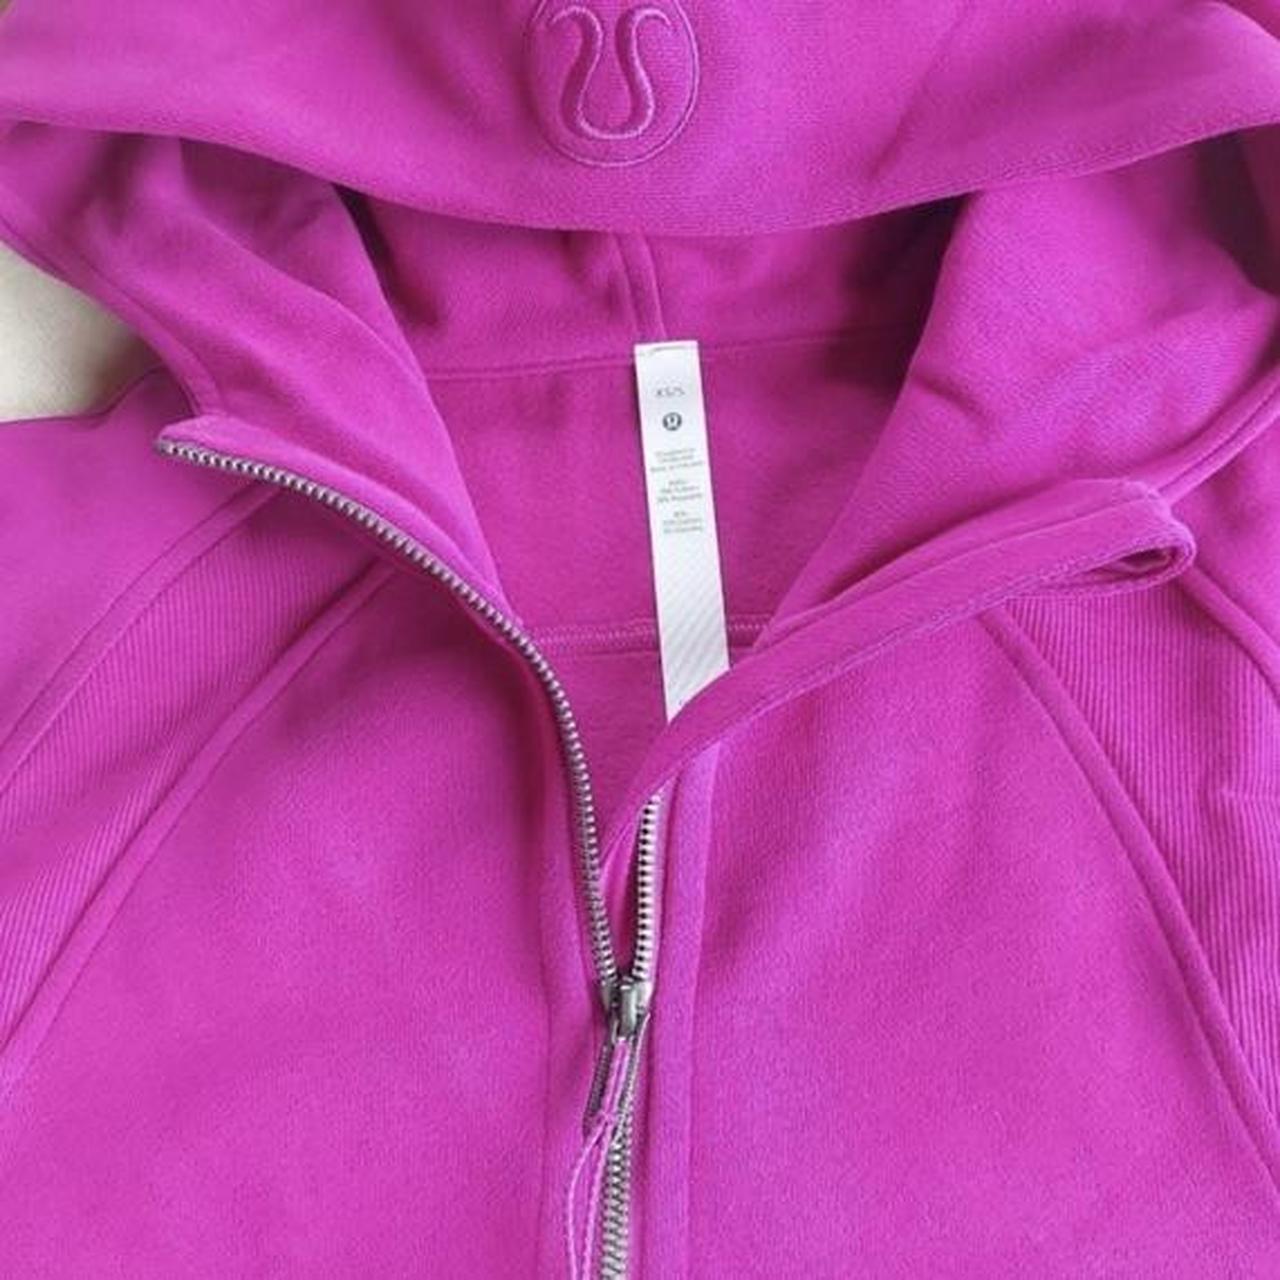 Lulu scuba hoodie dupe #lululemon #activewear - Depop